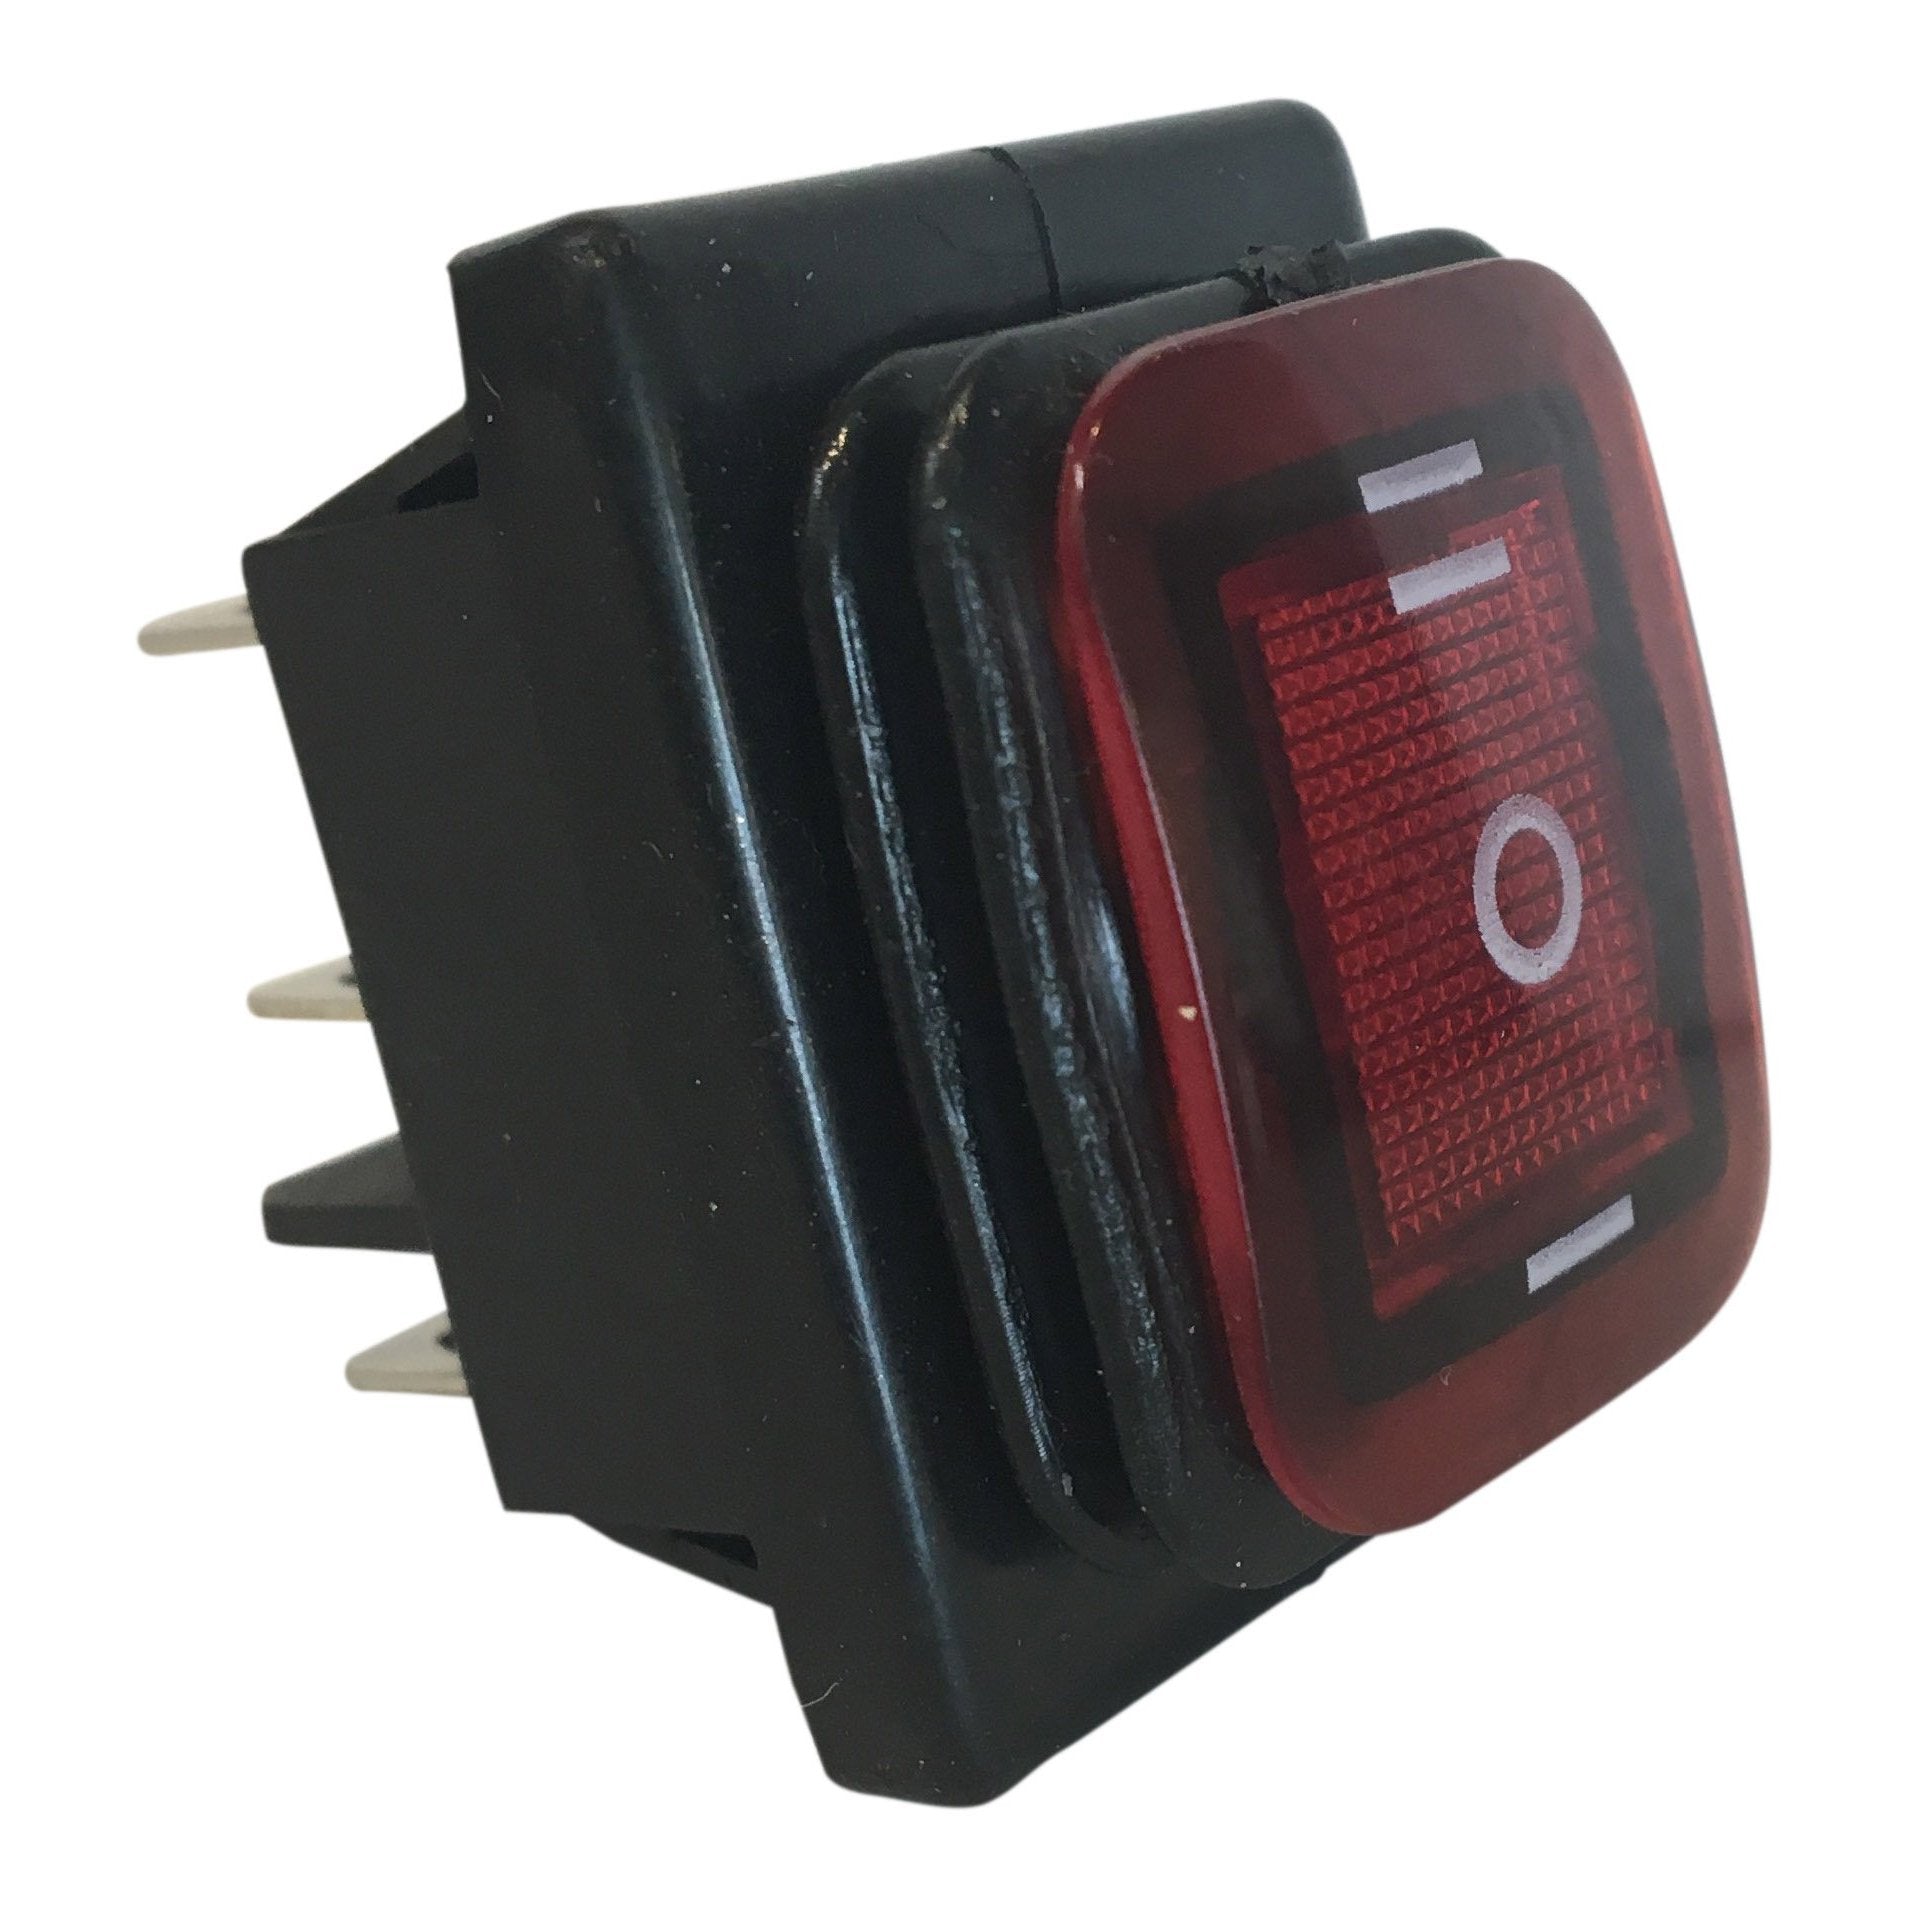 Interruptores de balancim de LED à prova d'água Product Image